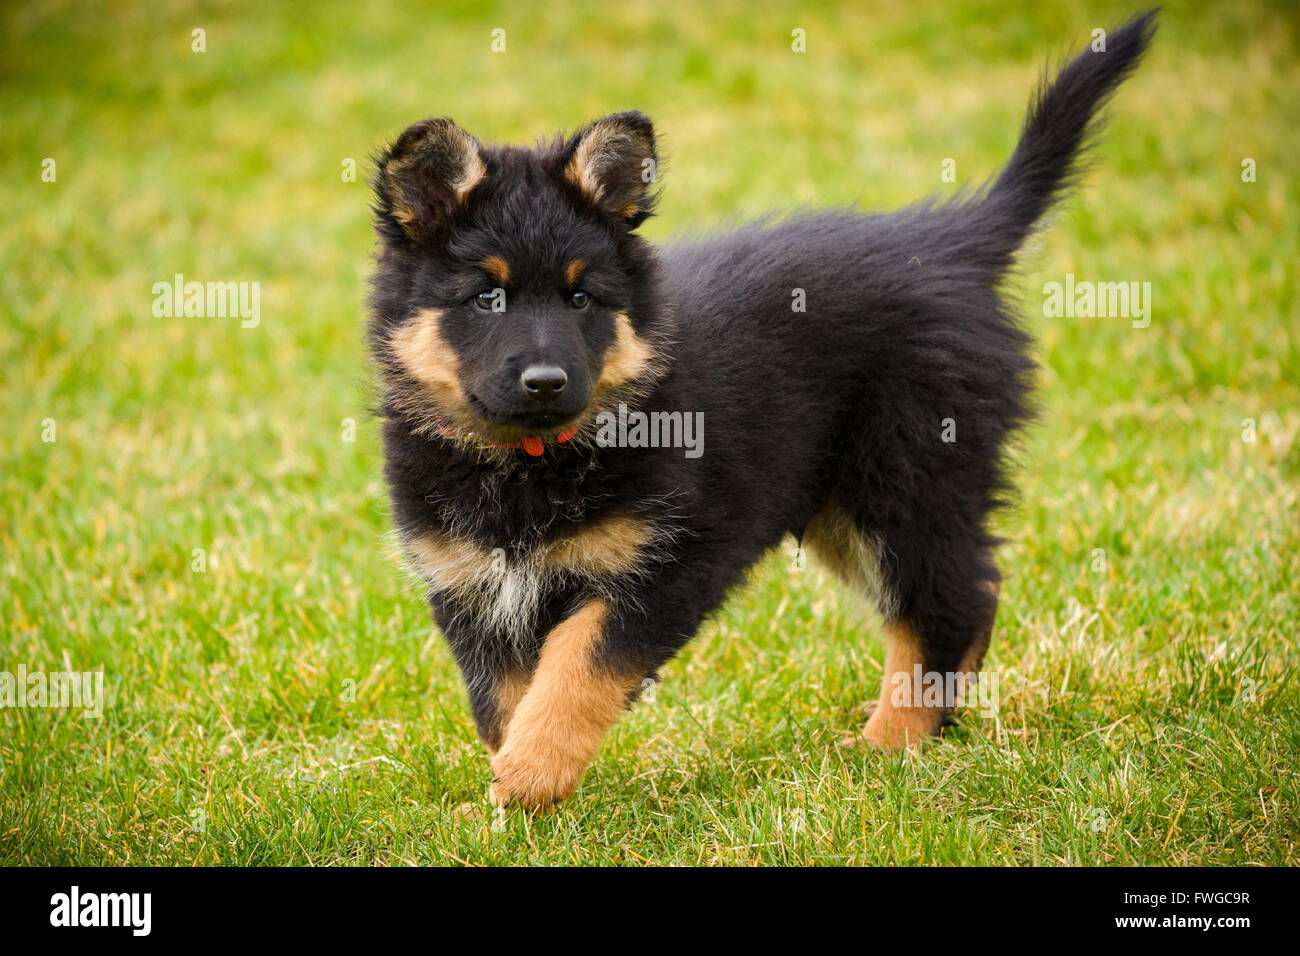 Bohemian Shepherd Welpen - tschechische nationale Rasse, die beliebteste Rasse in Tschechien, guter Wachhund, kinderfreundlich Stockfoto